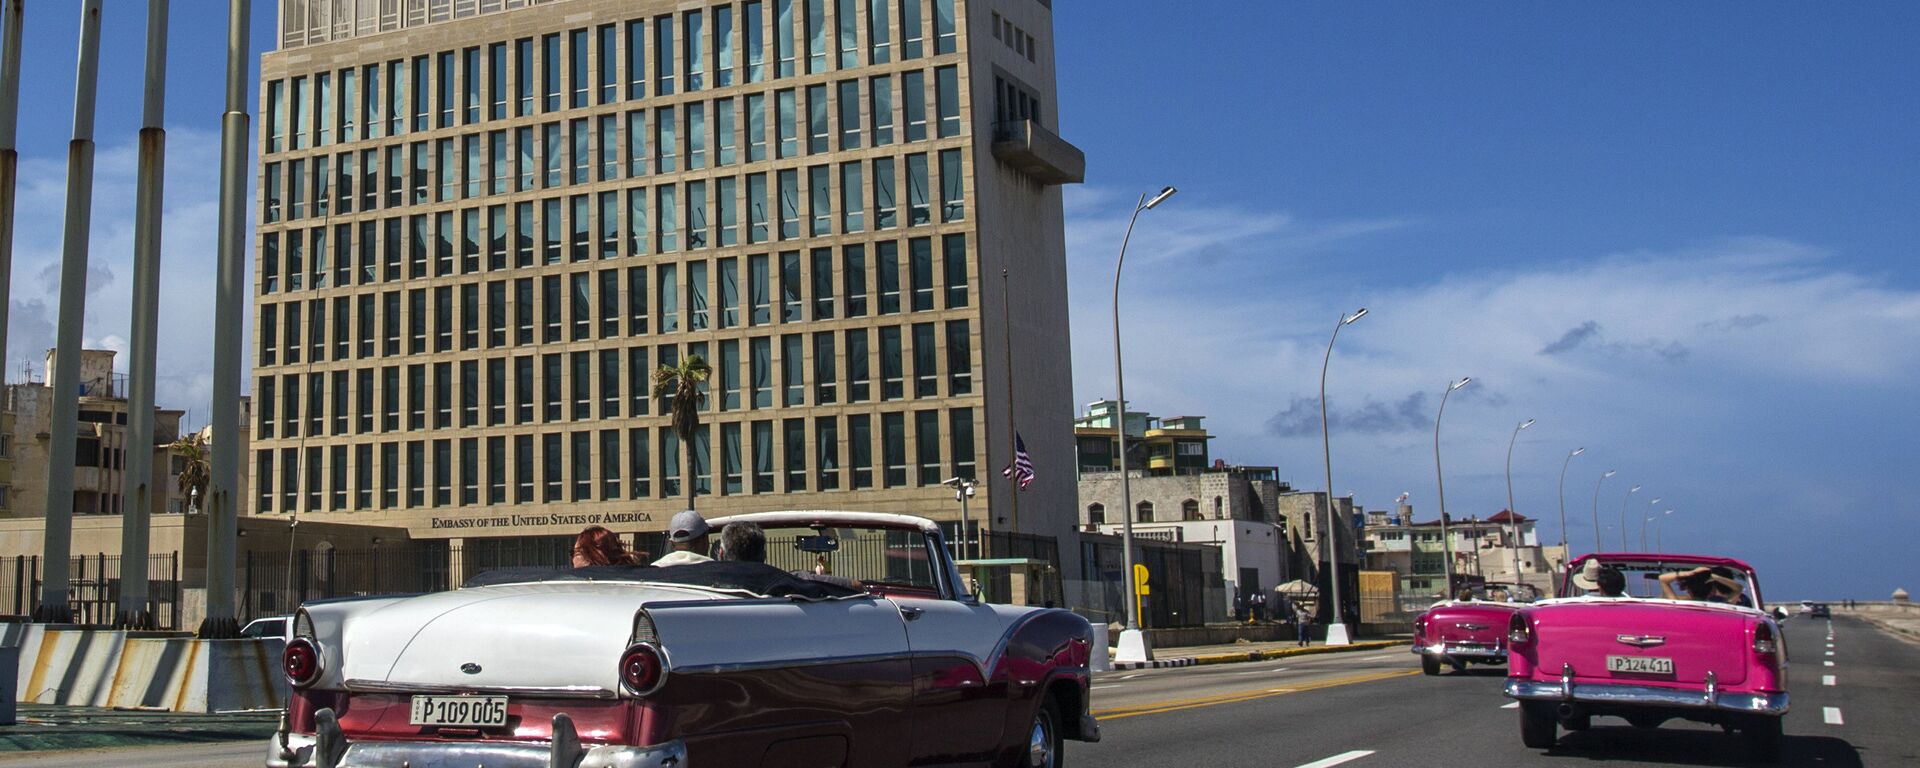 La embajada de Estados Unidos en La Habana, Cuba - Sputnik Mundo, 1920, 01.10.2021